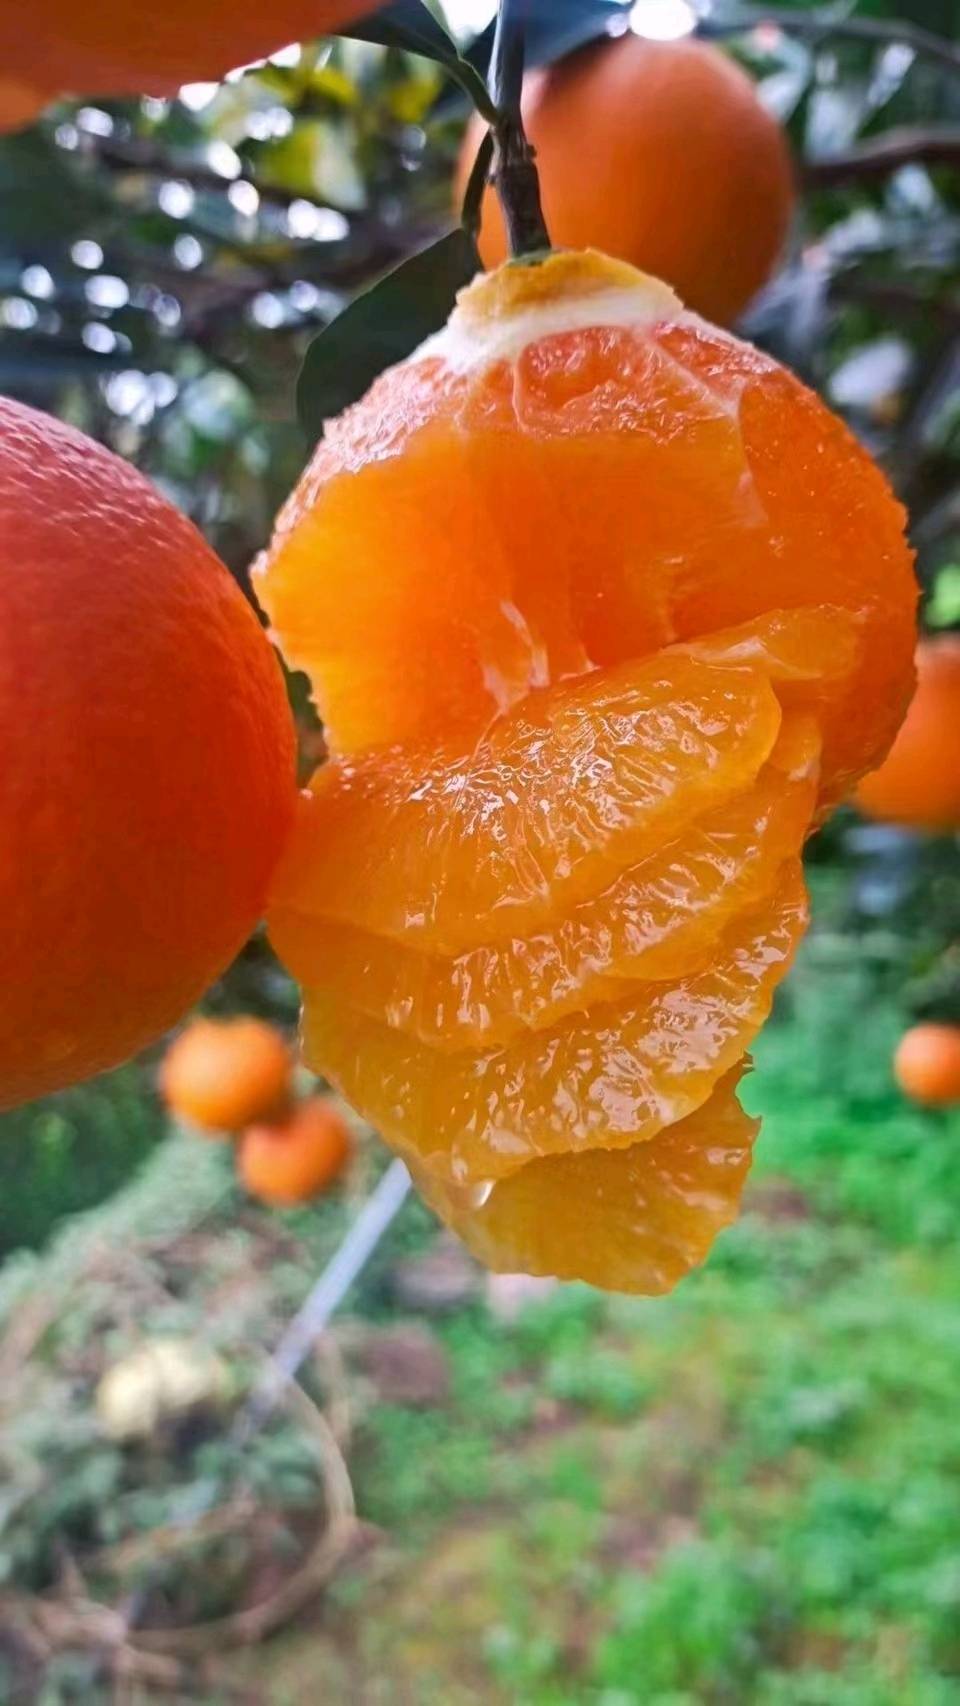 湖北九月红果冻橙中华红纽荷尔长虹15272128285微信同号等多品种季节性橙子全年供应